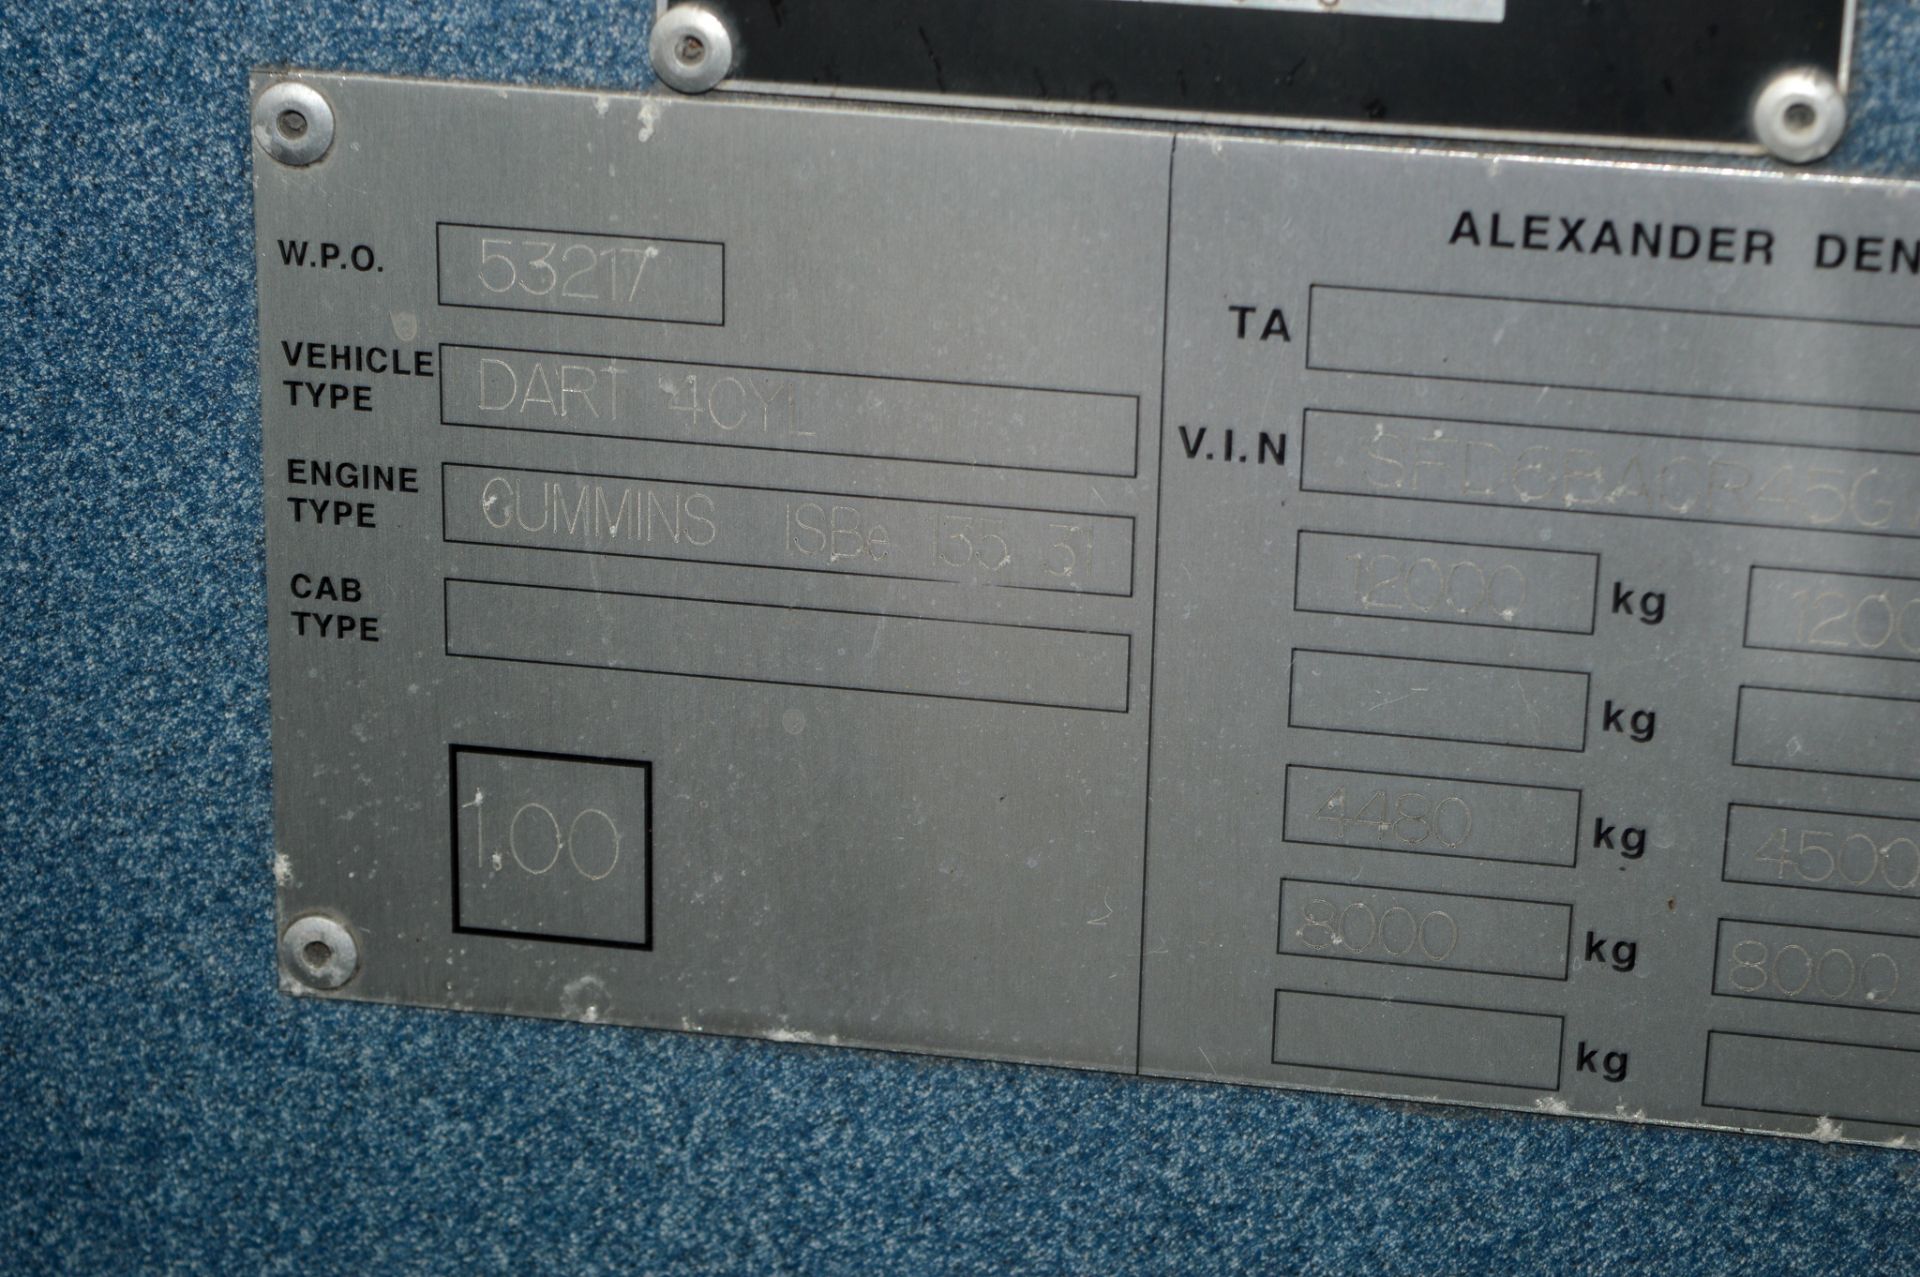 Alexander Dennis Dart SLF 27 seat service bus Registration Number: PN06 UYL Date of Registration: - Image 11 of 11